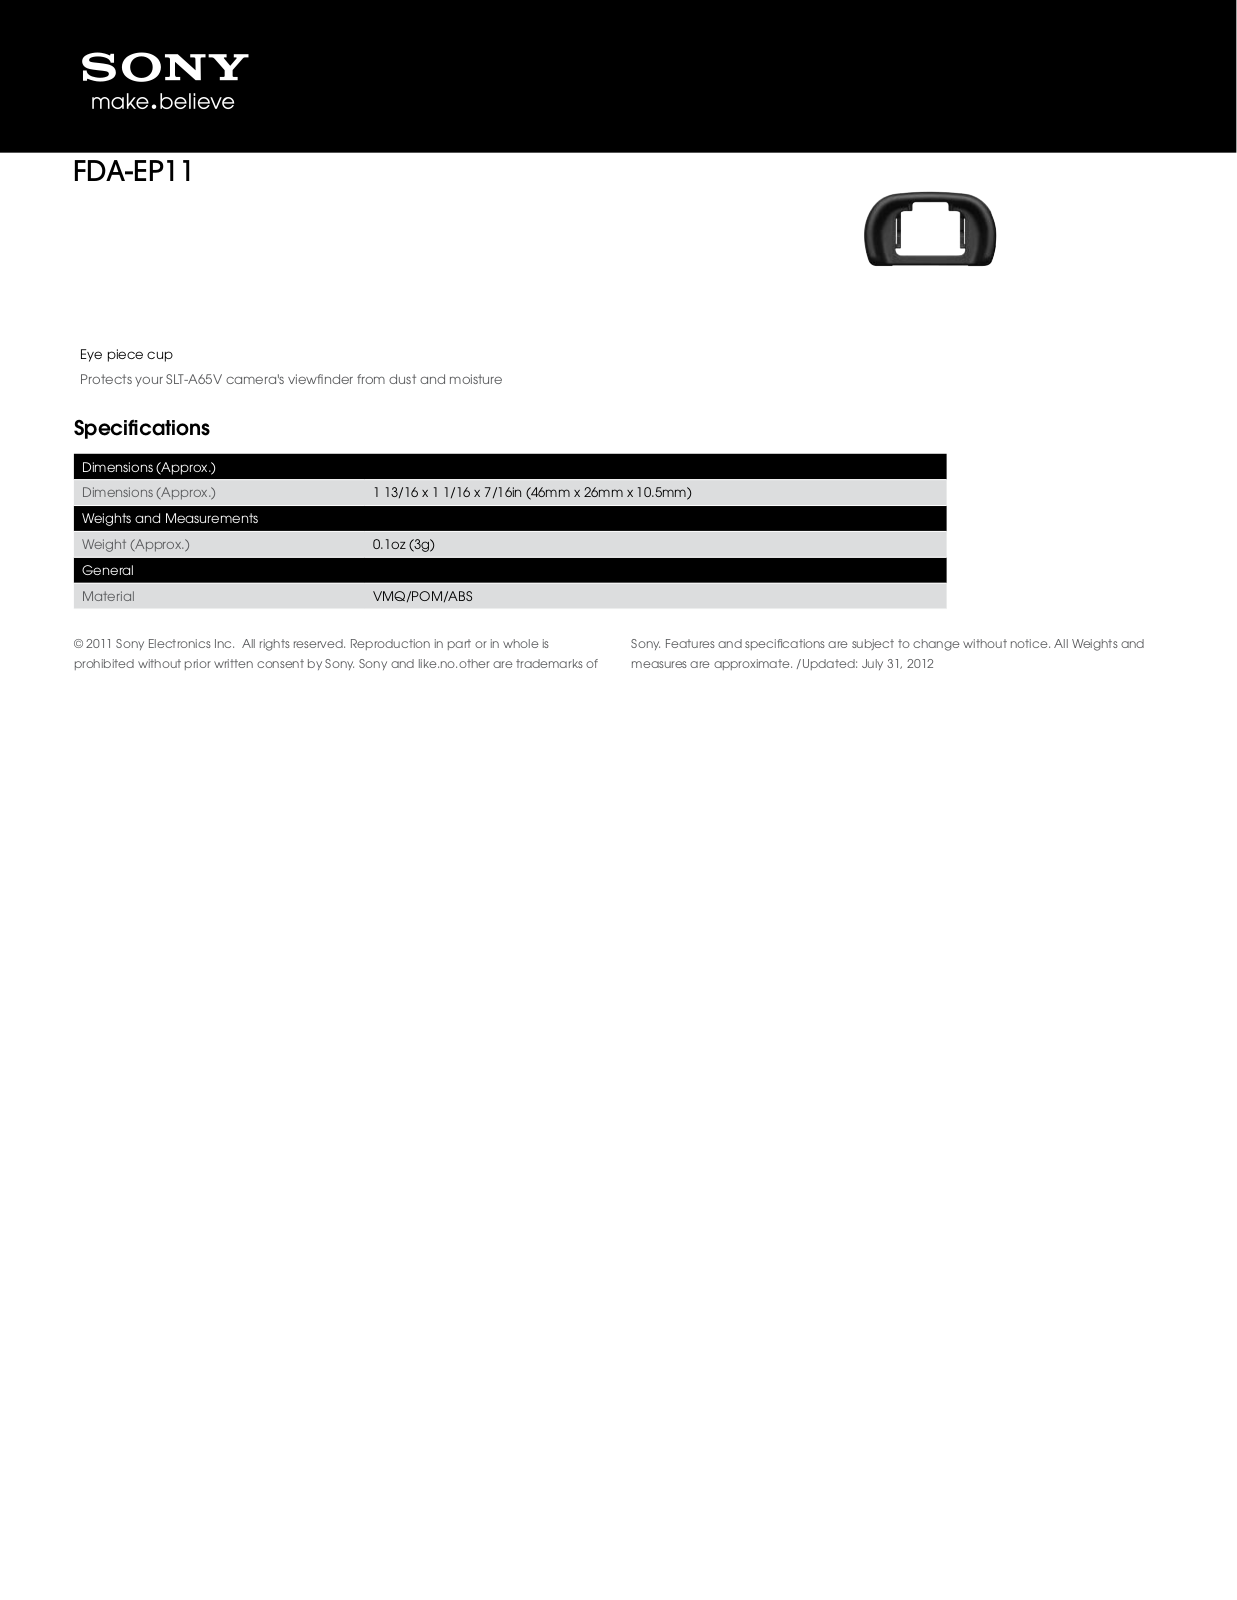 Sony FDA-EP11 User Manual